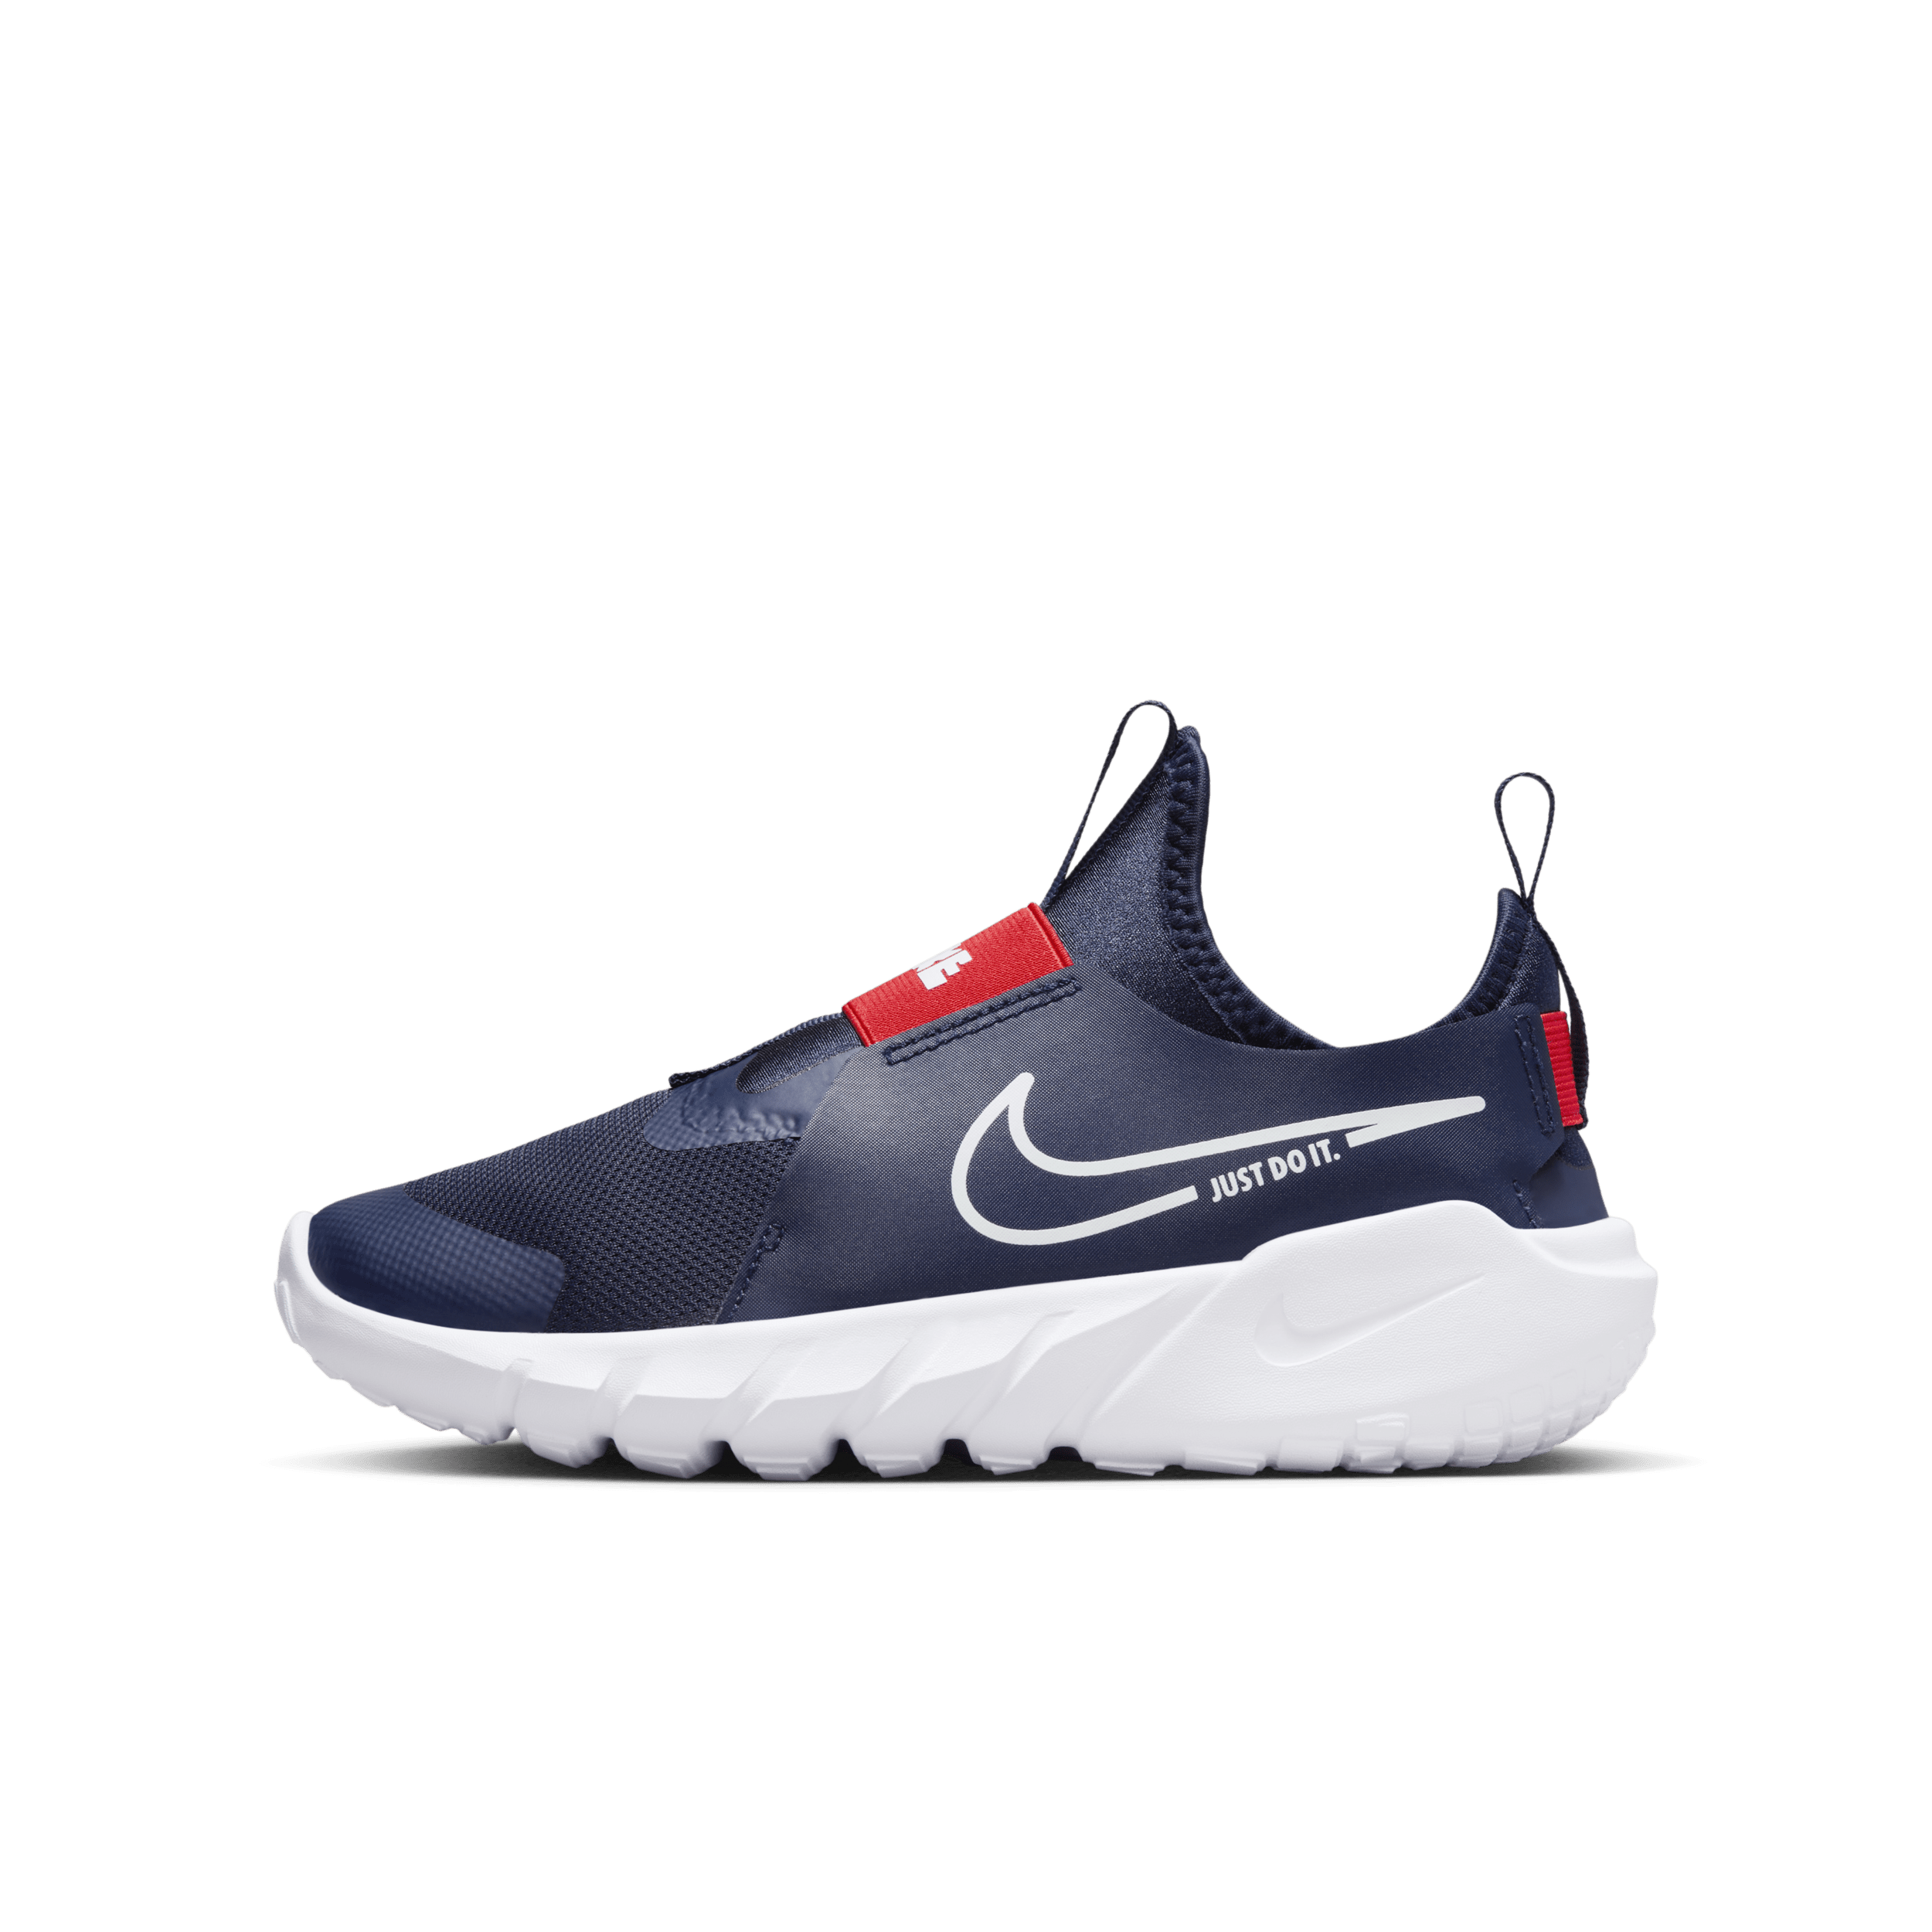 Nike Flex Runner 2 Hardloopschoenen voor kids (straat) - Blauw